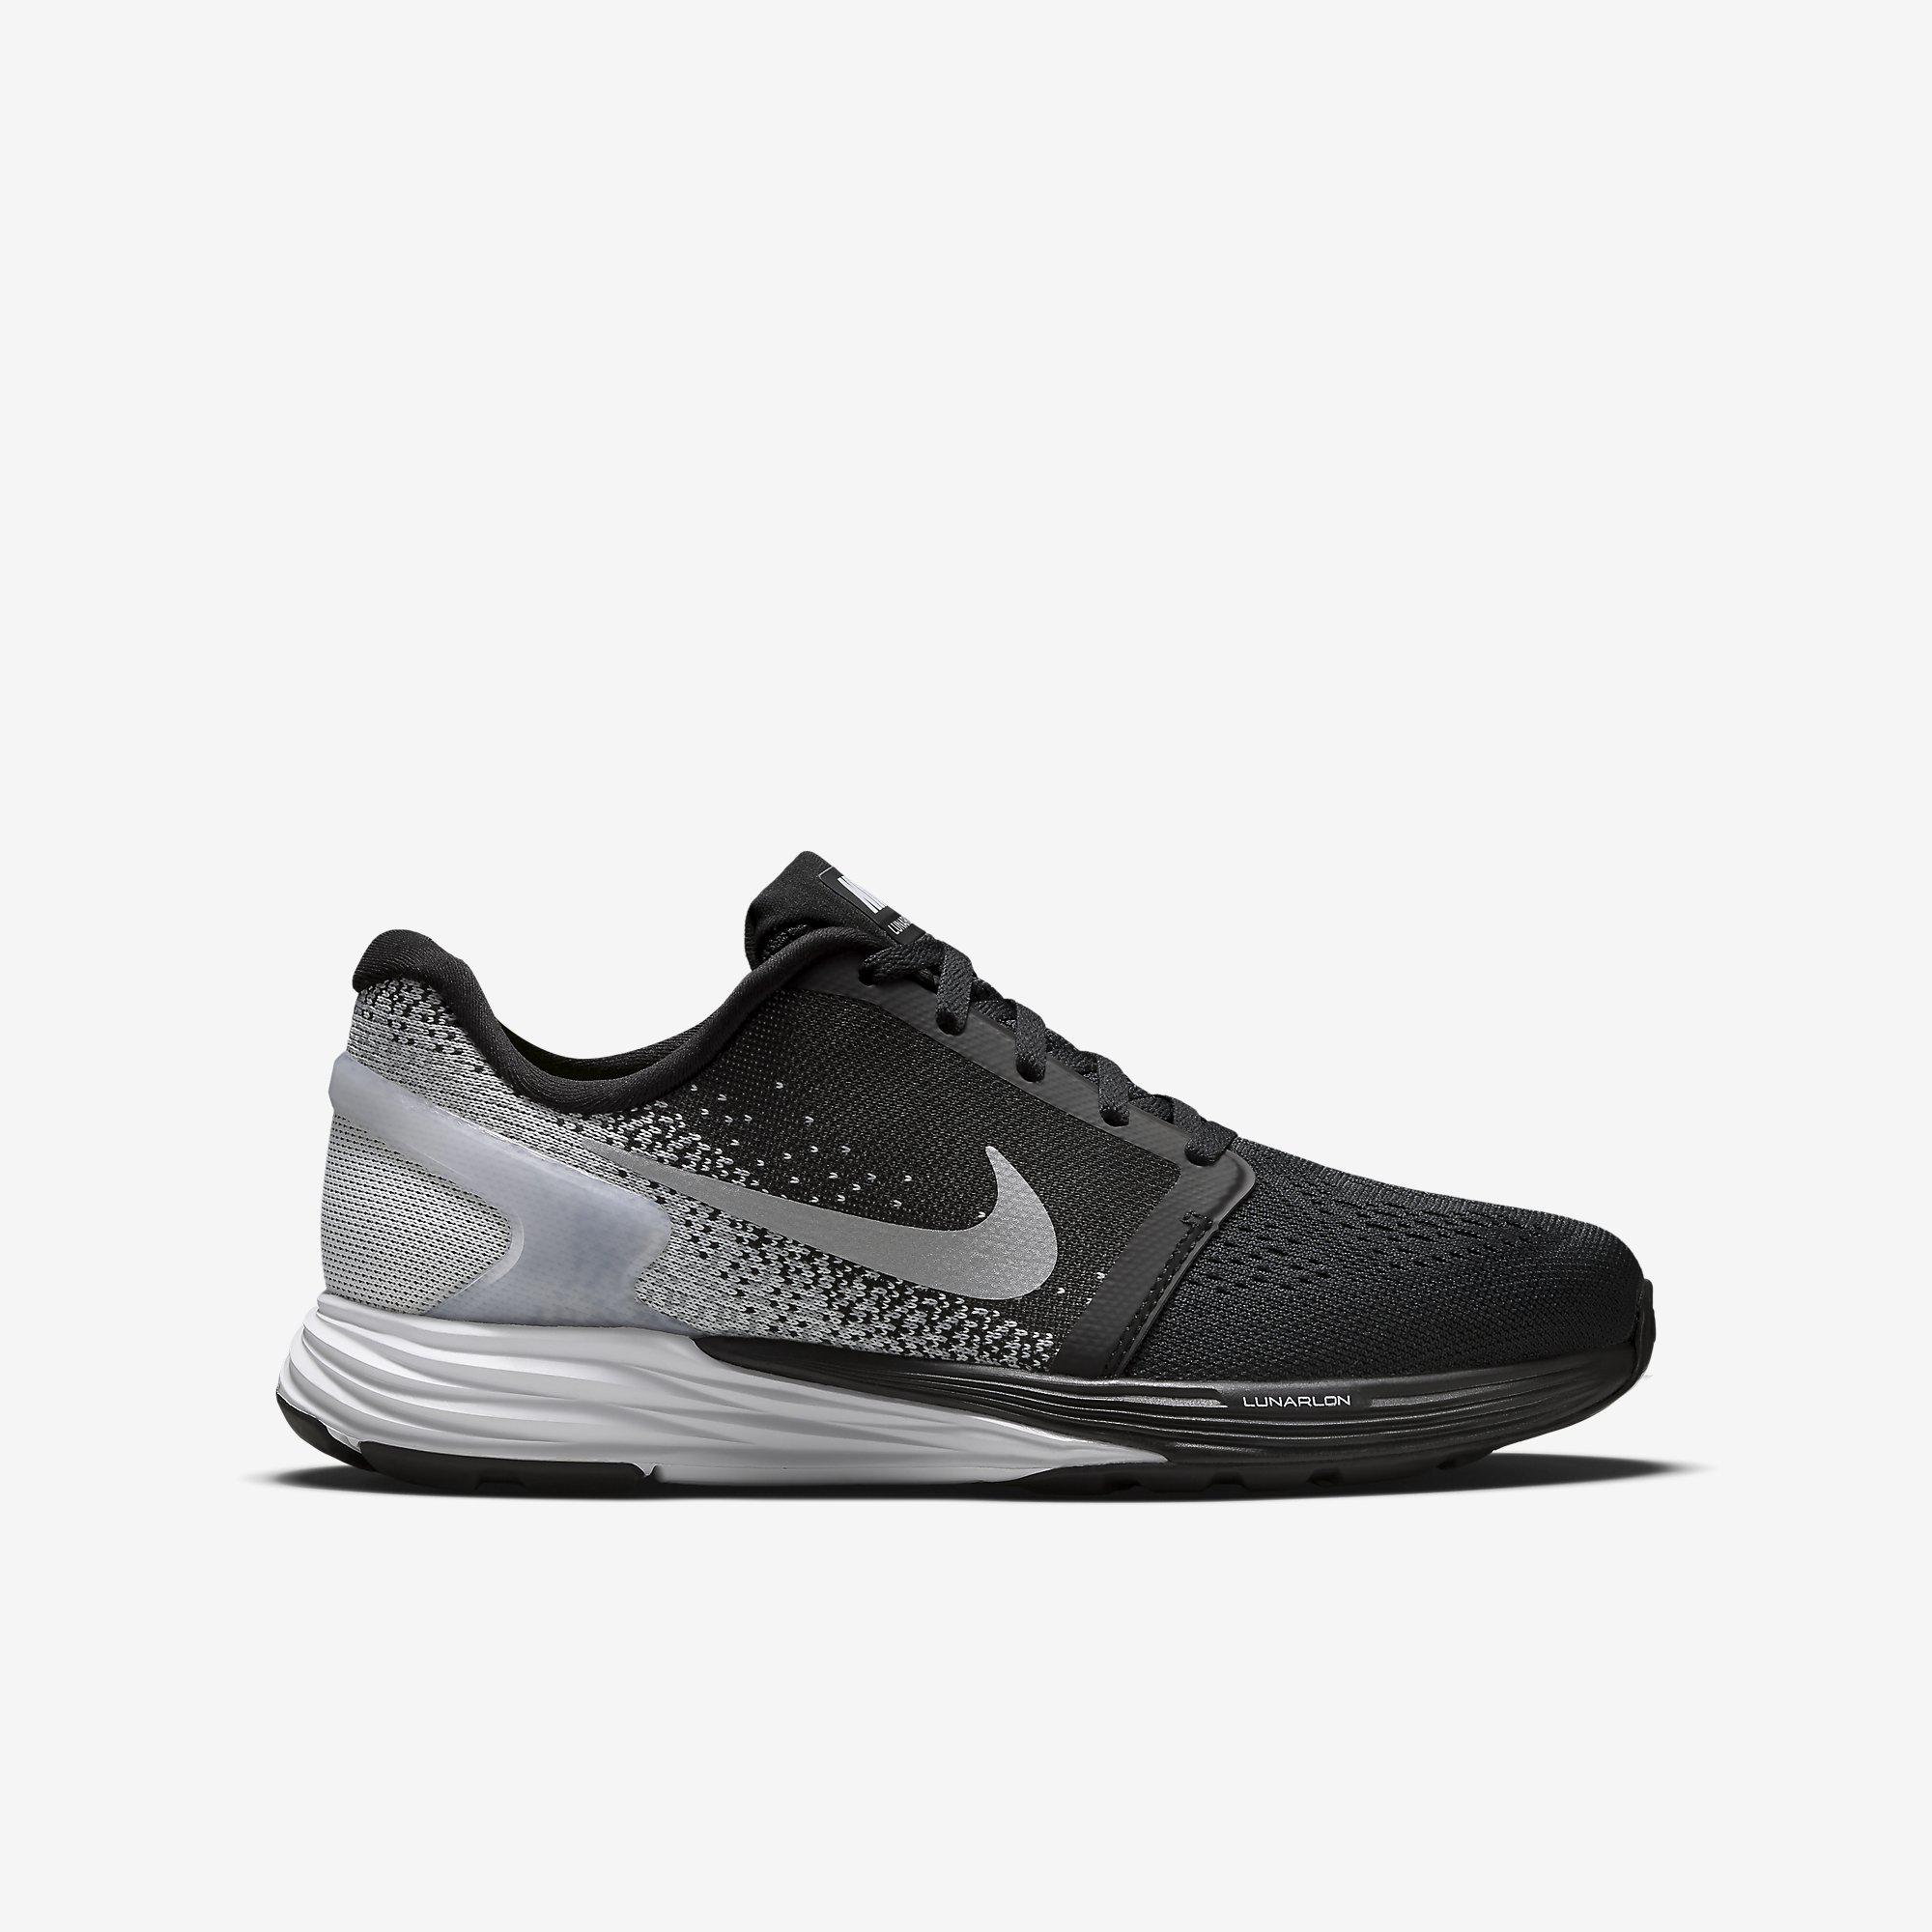 Nike Boys LunarGlide 7 - Black/Grey - Tennisnuts.com